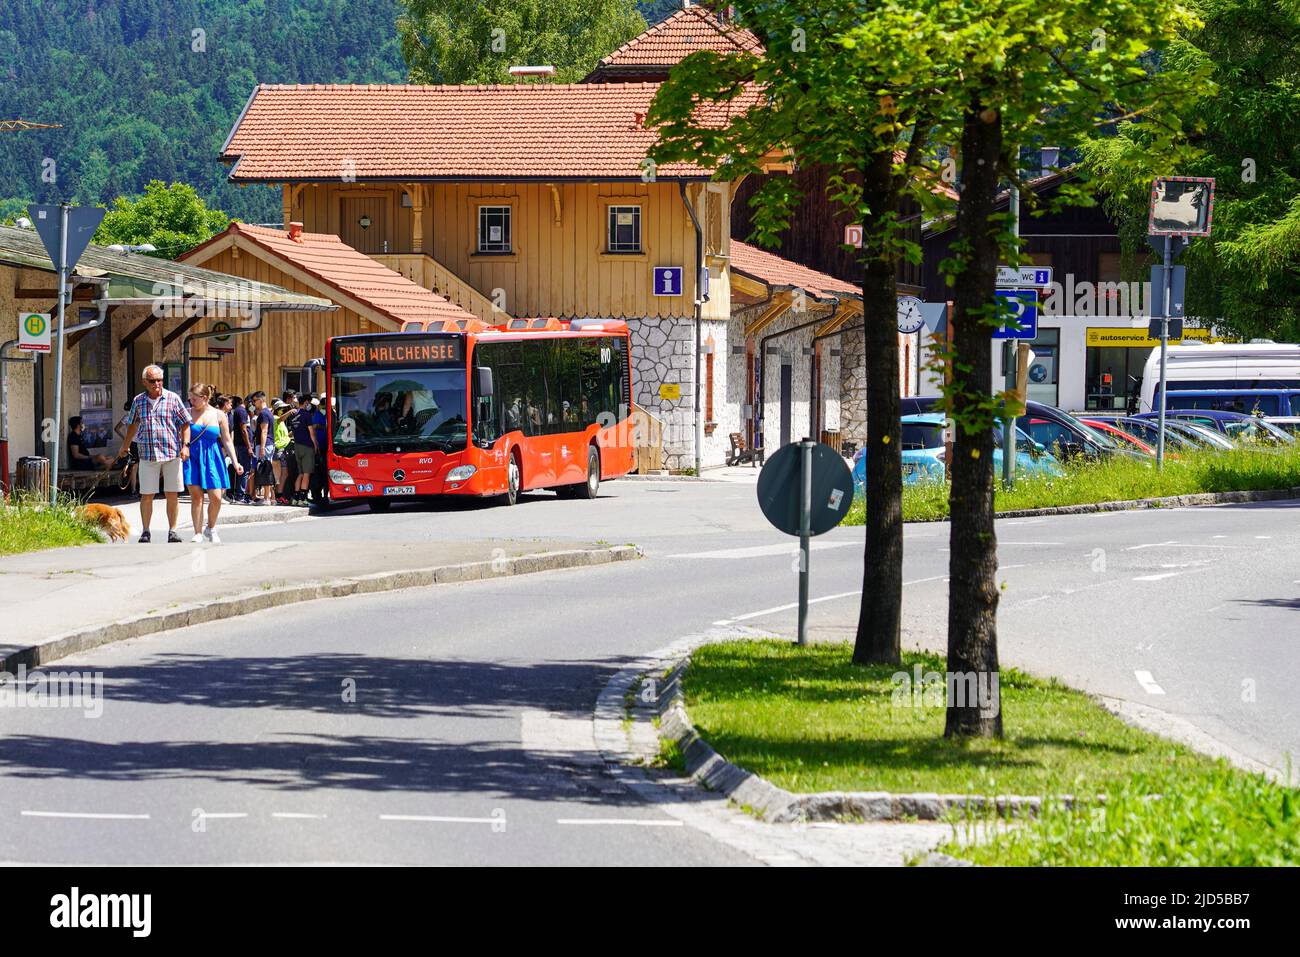 De nombreux voyageurs d'une journée se rendent sur un bus de la ligne 9608 à la gare de Kochel en Bavière pour aller à Walchensee, Kochel, Allemagne, 18.6.22 Banque D'Images